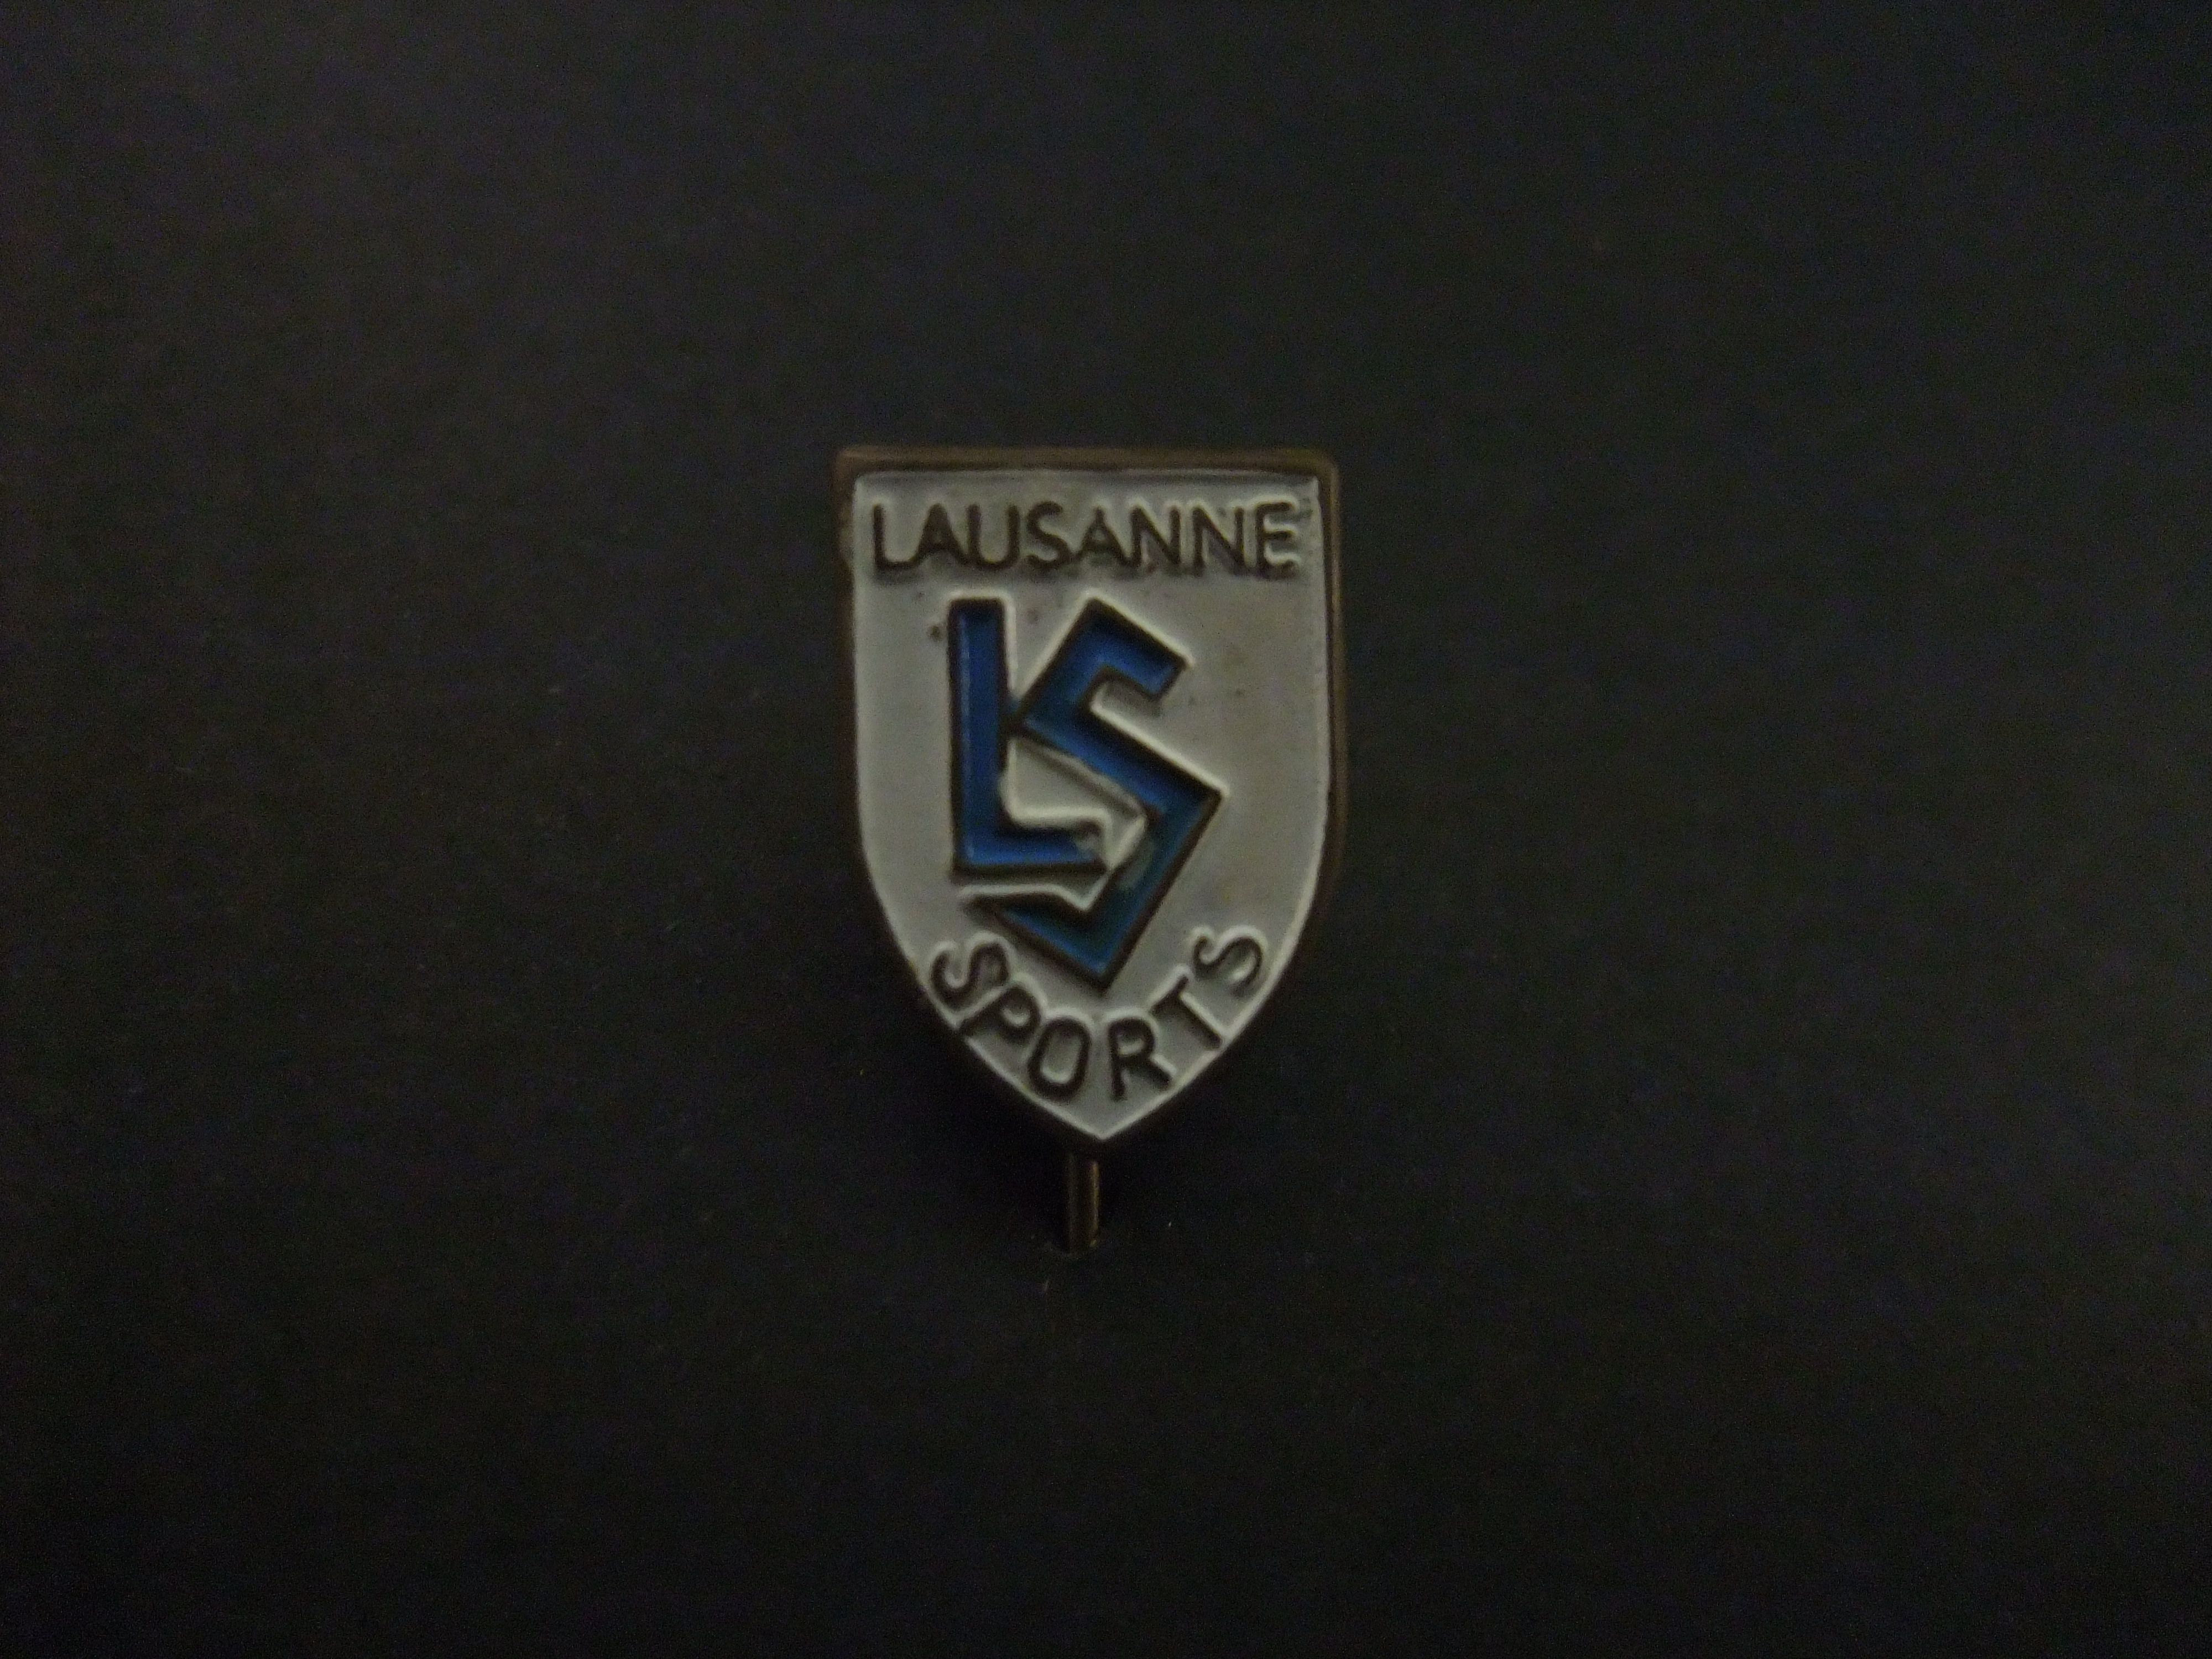 Lausanne Sport voetbalclub Zwitserland logo